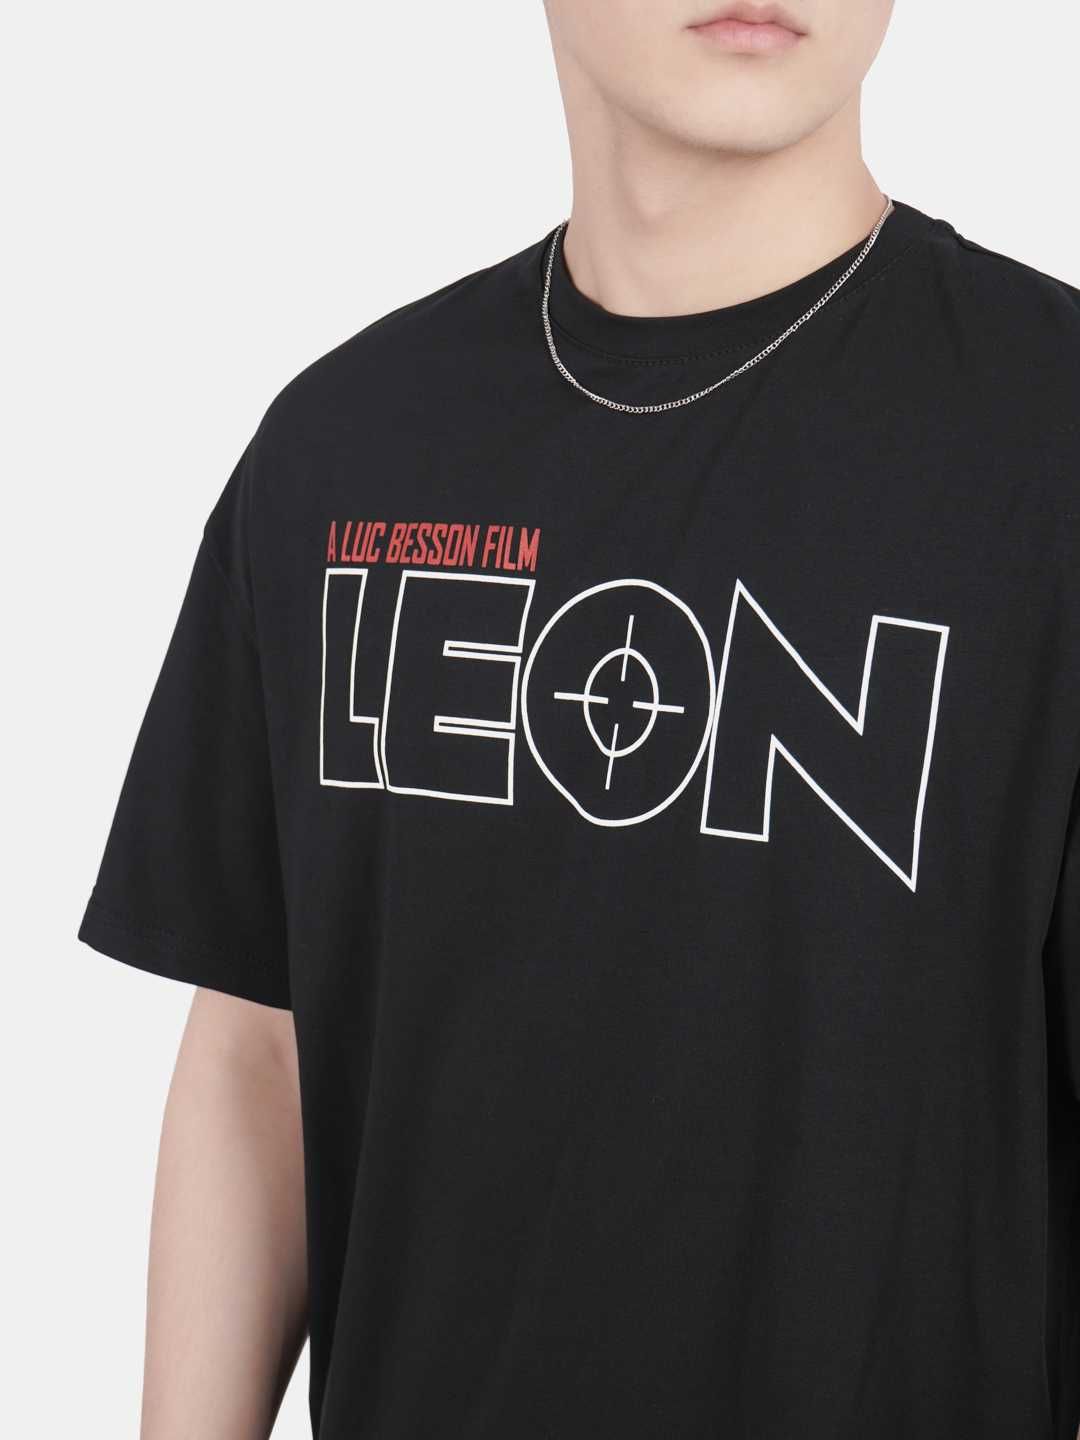 Мужской комплект: футболка и шорты - Leon. Летняя, весенняя погода